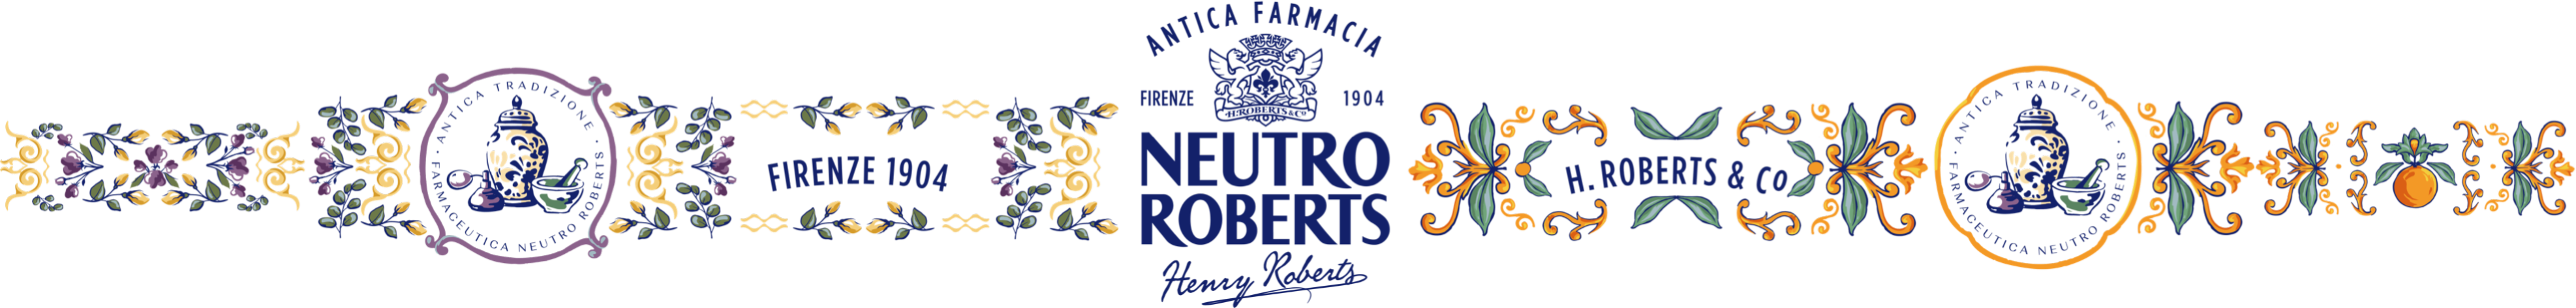 Logo: Neutro Roberts